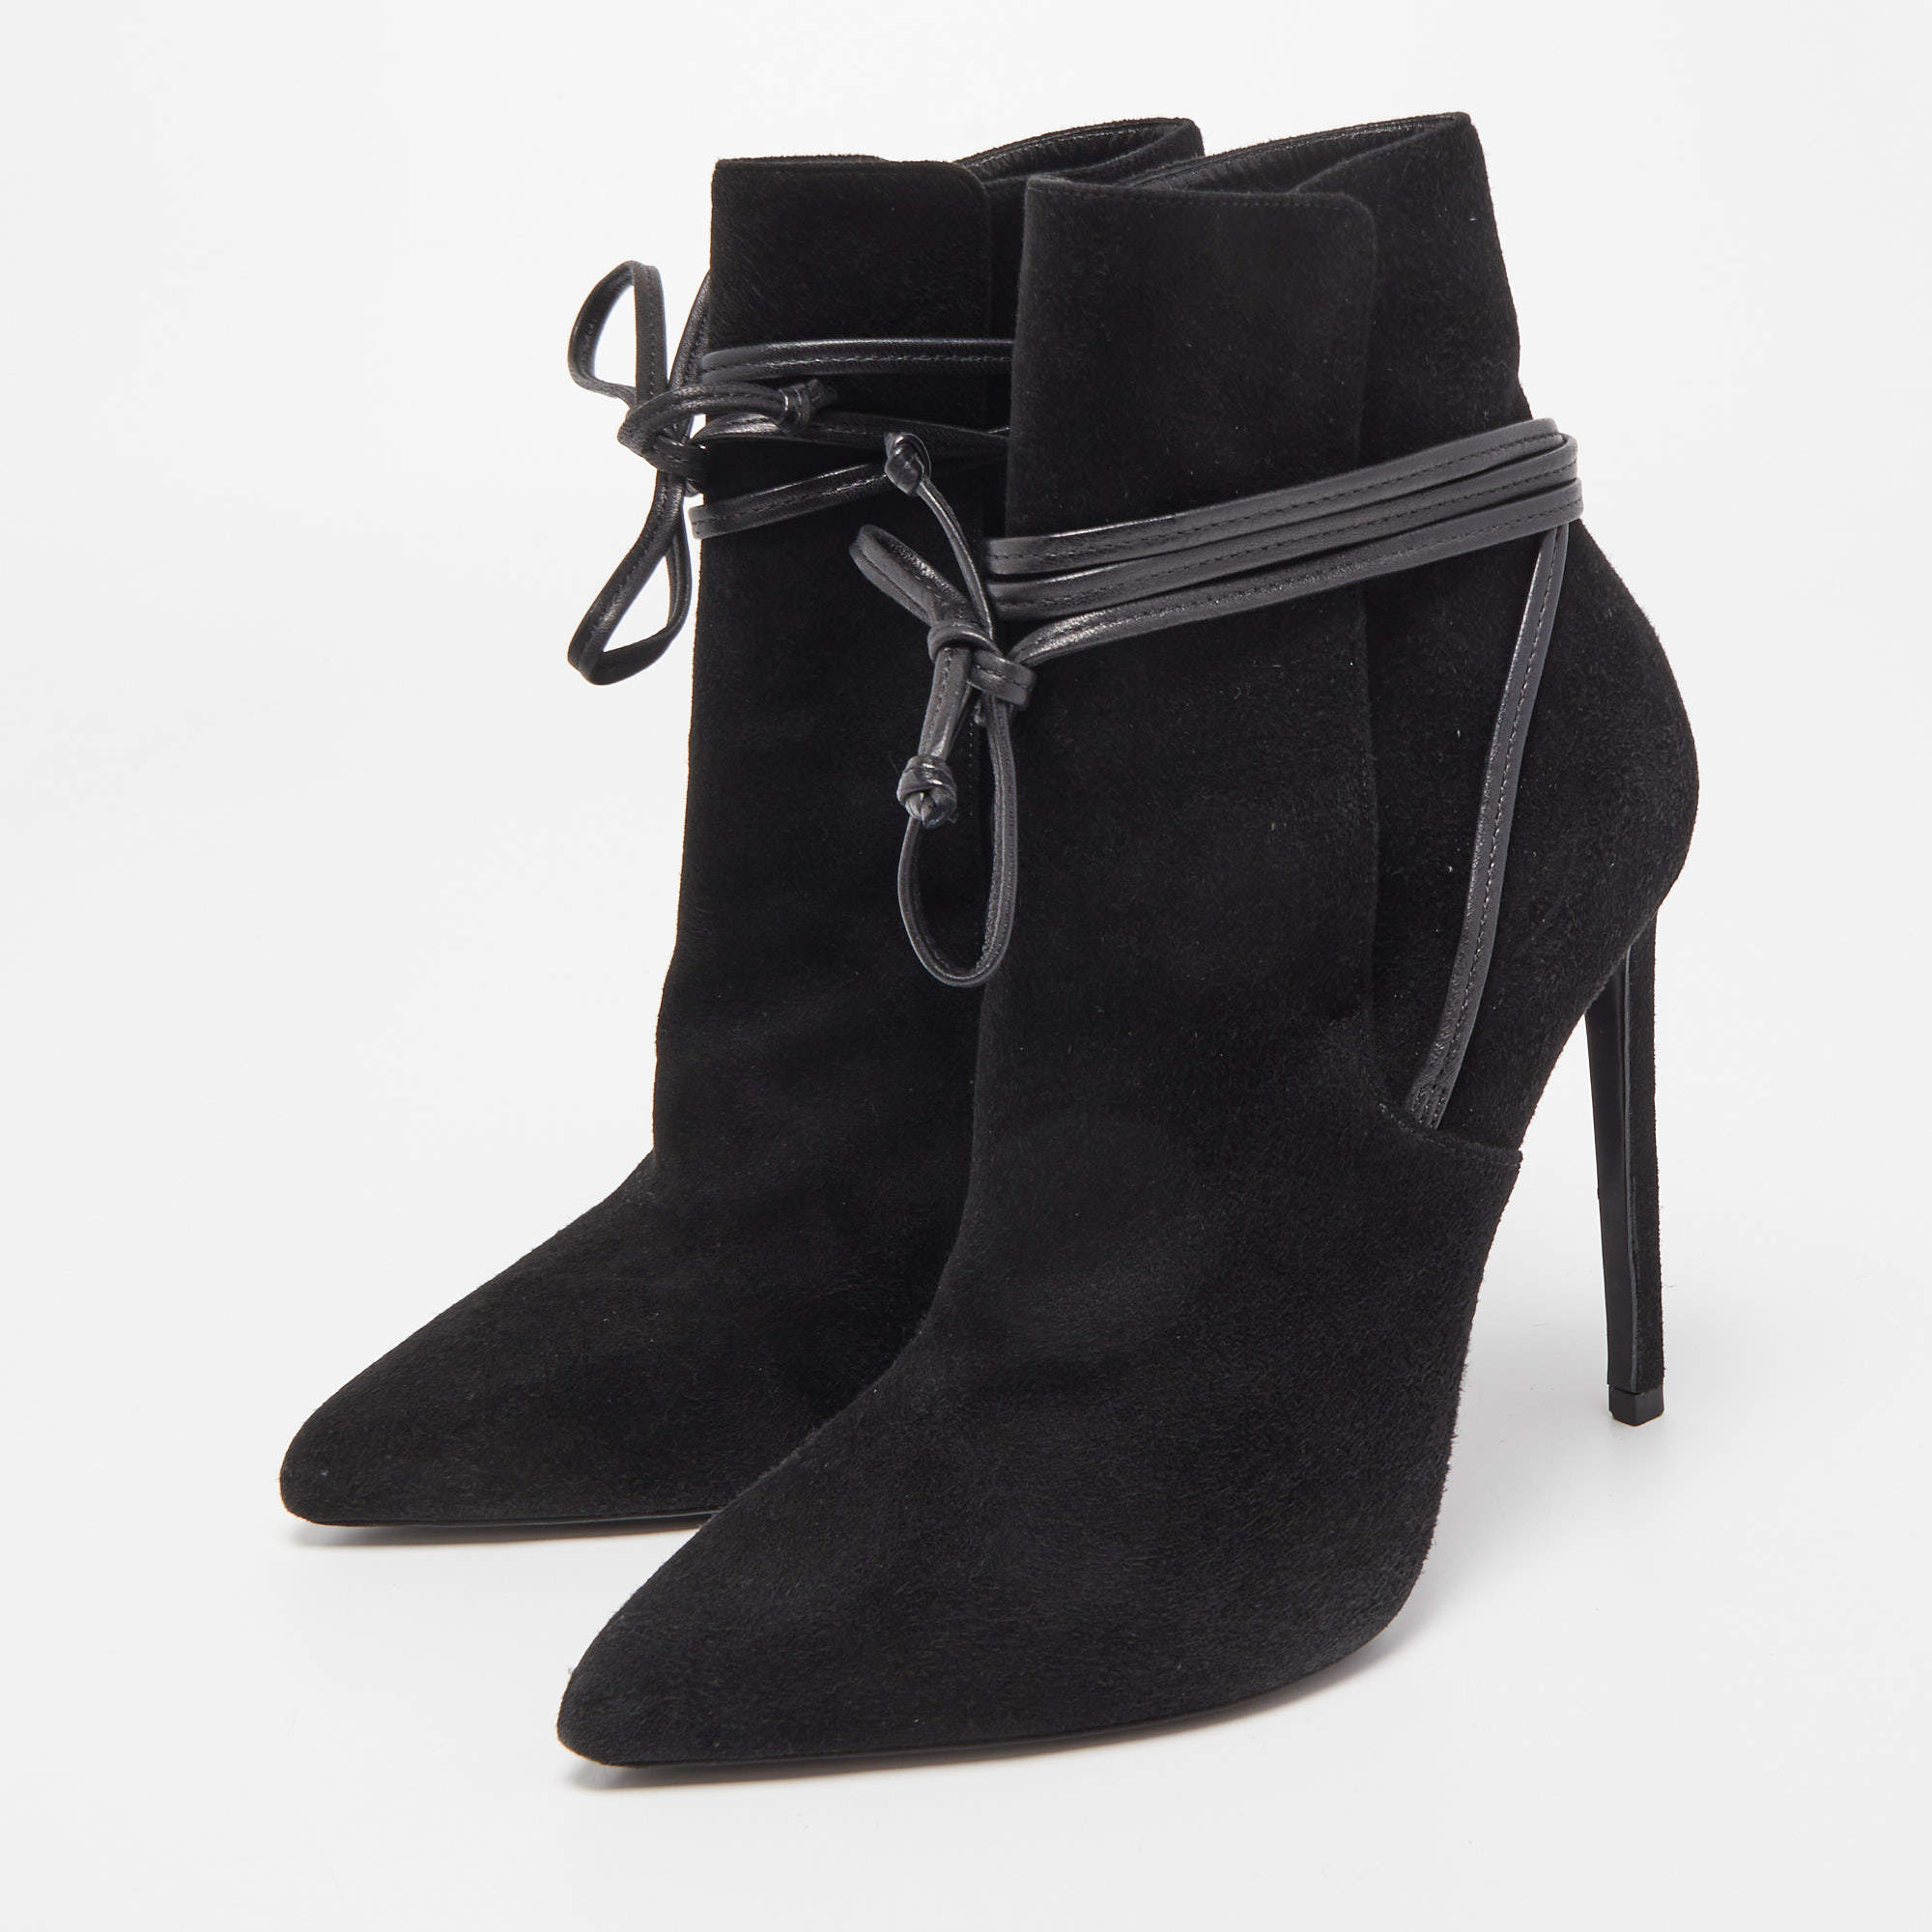 Saint Laurent Black Suede Pointed Toe Wrap Ankle Boots Size 38 Laurent Paris | TLC